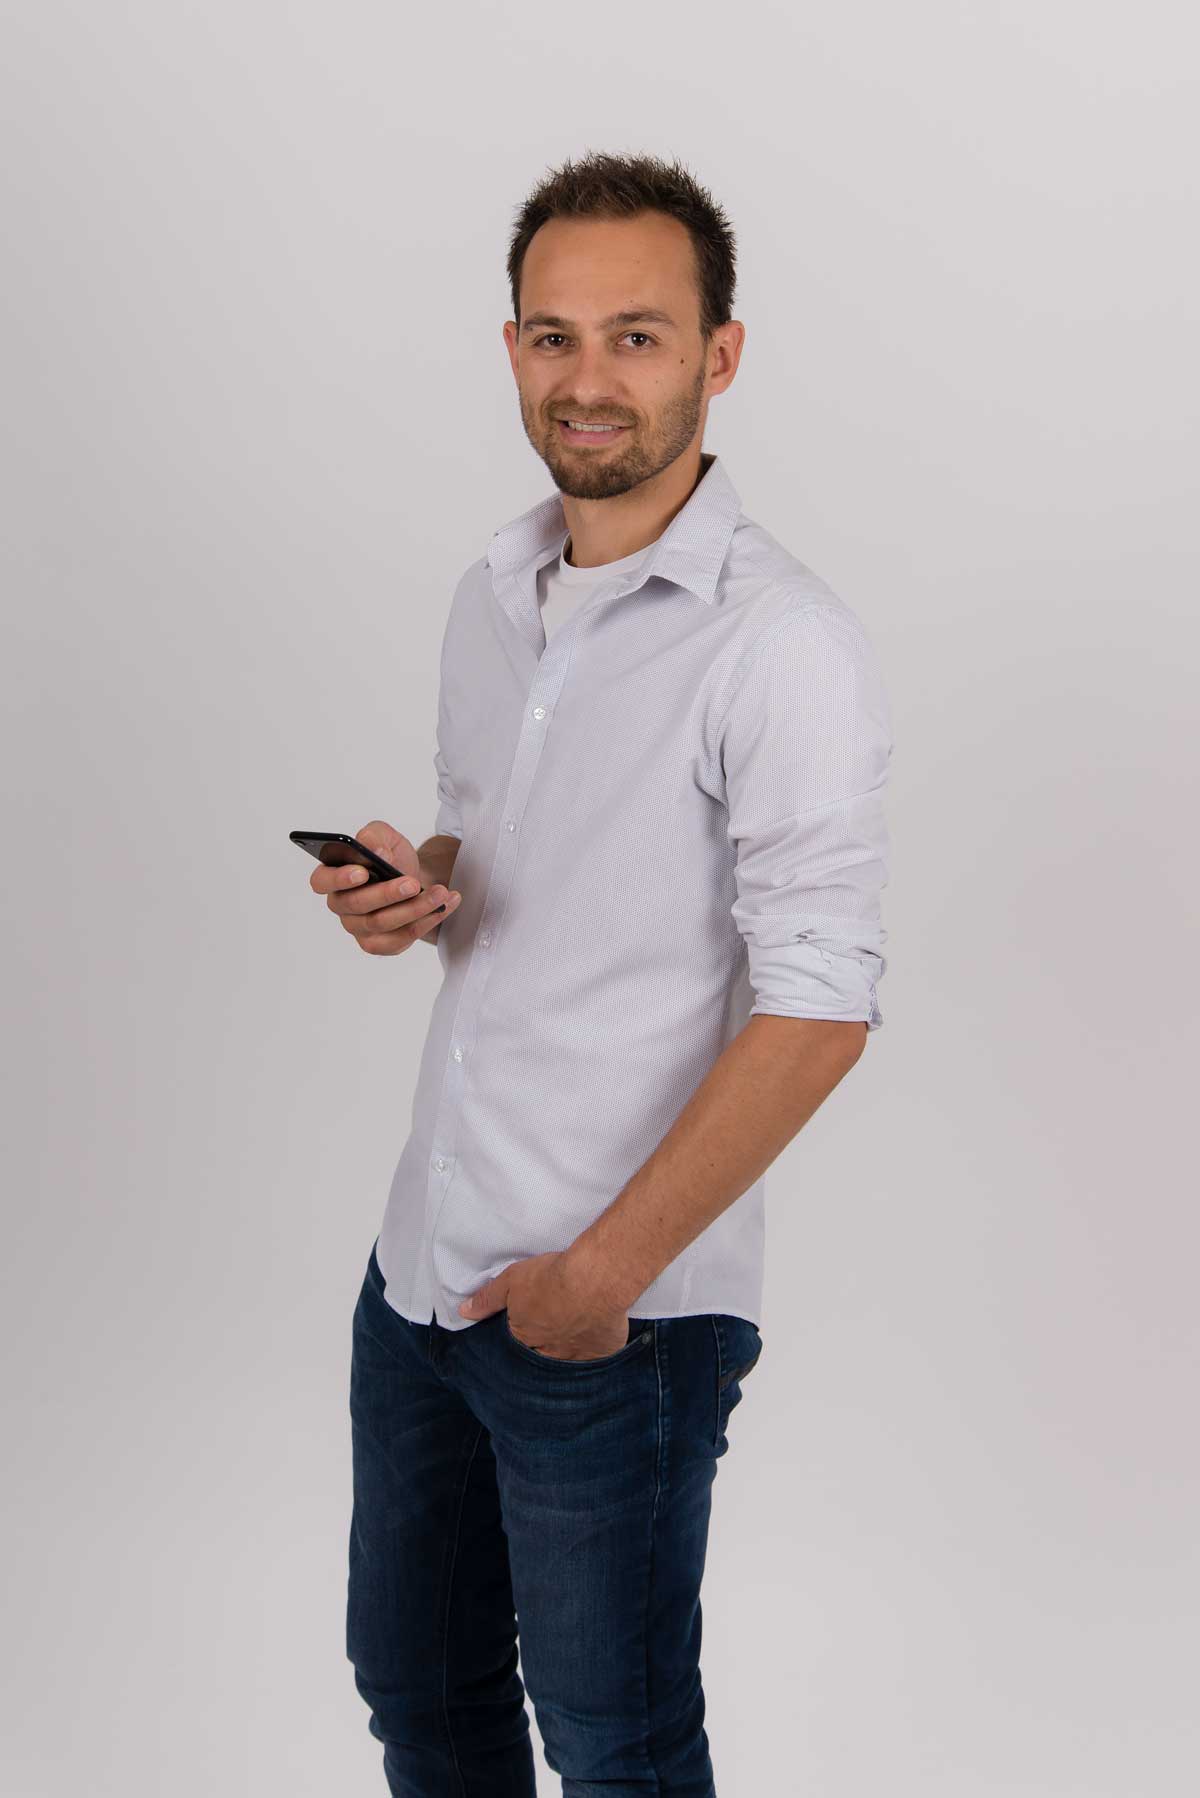 Christoph Bolda mit einem Smartphone in der Hand, Blick Richtung Kamera